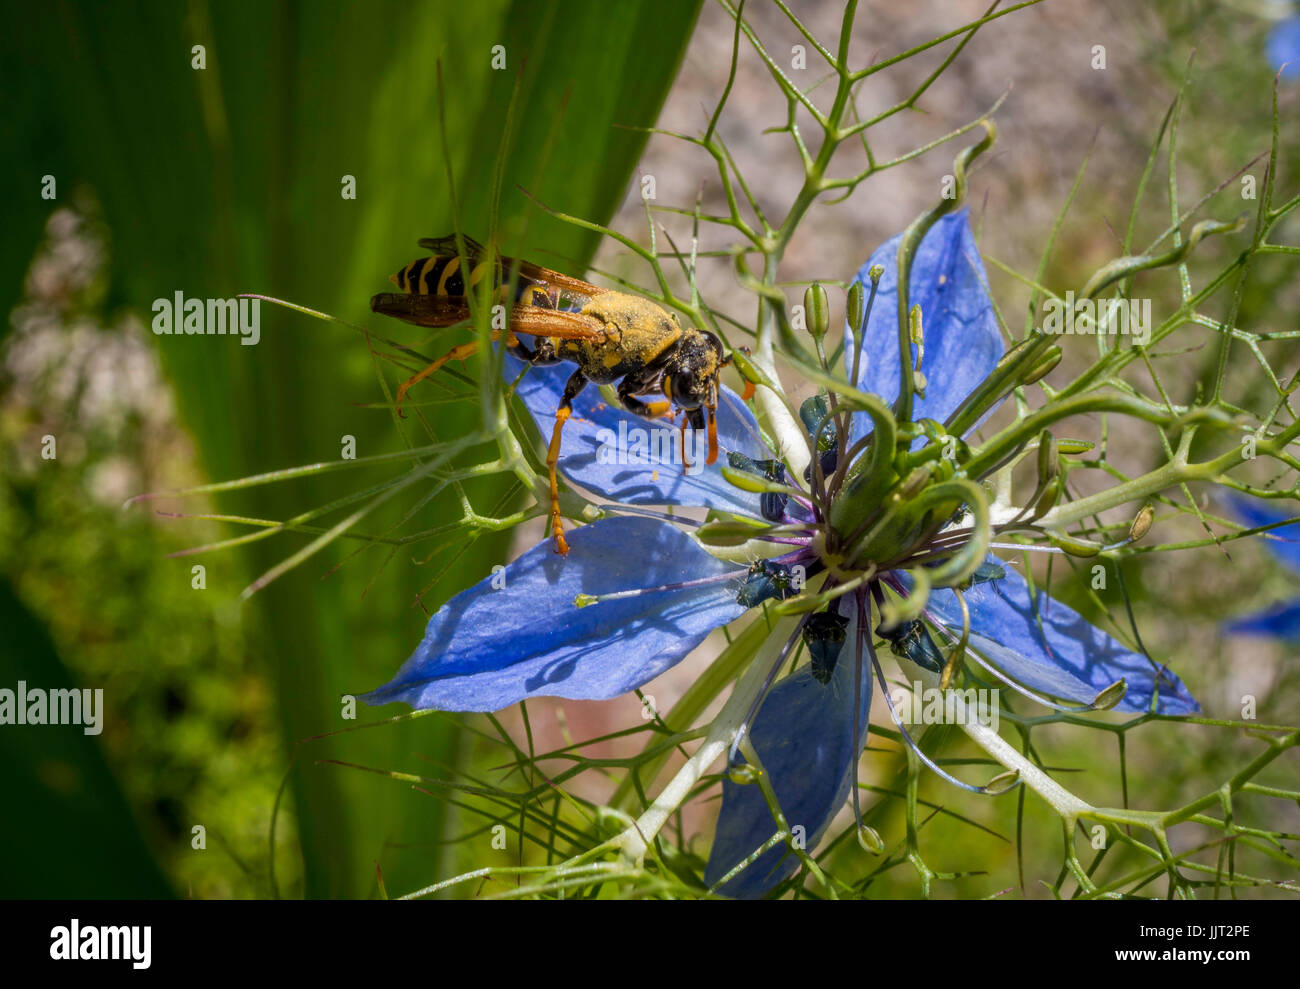 Wespe auf der Blume eine Nigella Damascena. Liebe im Nebel Blume, Bayern, Deutschland, Europa Stockfoto